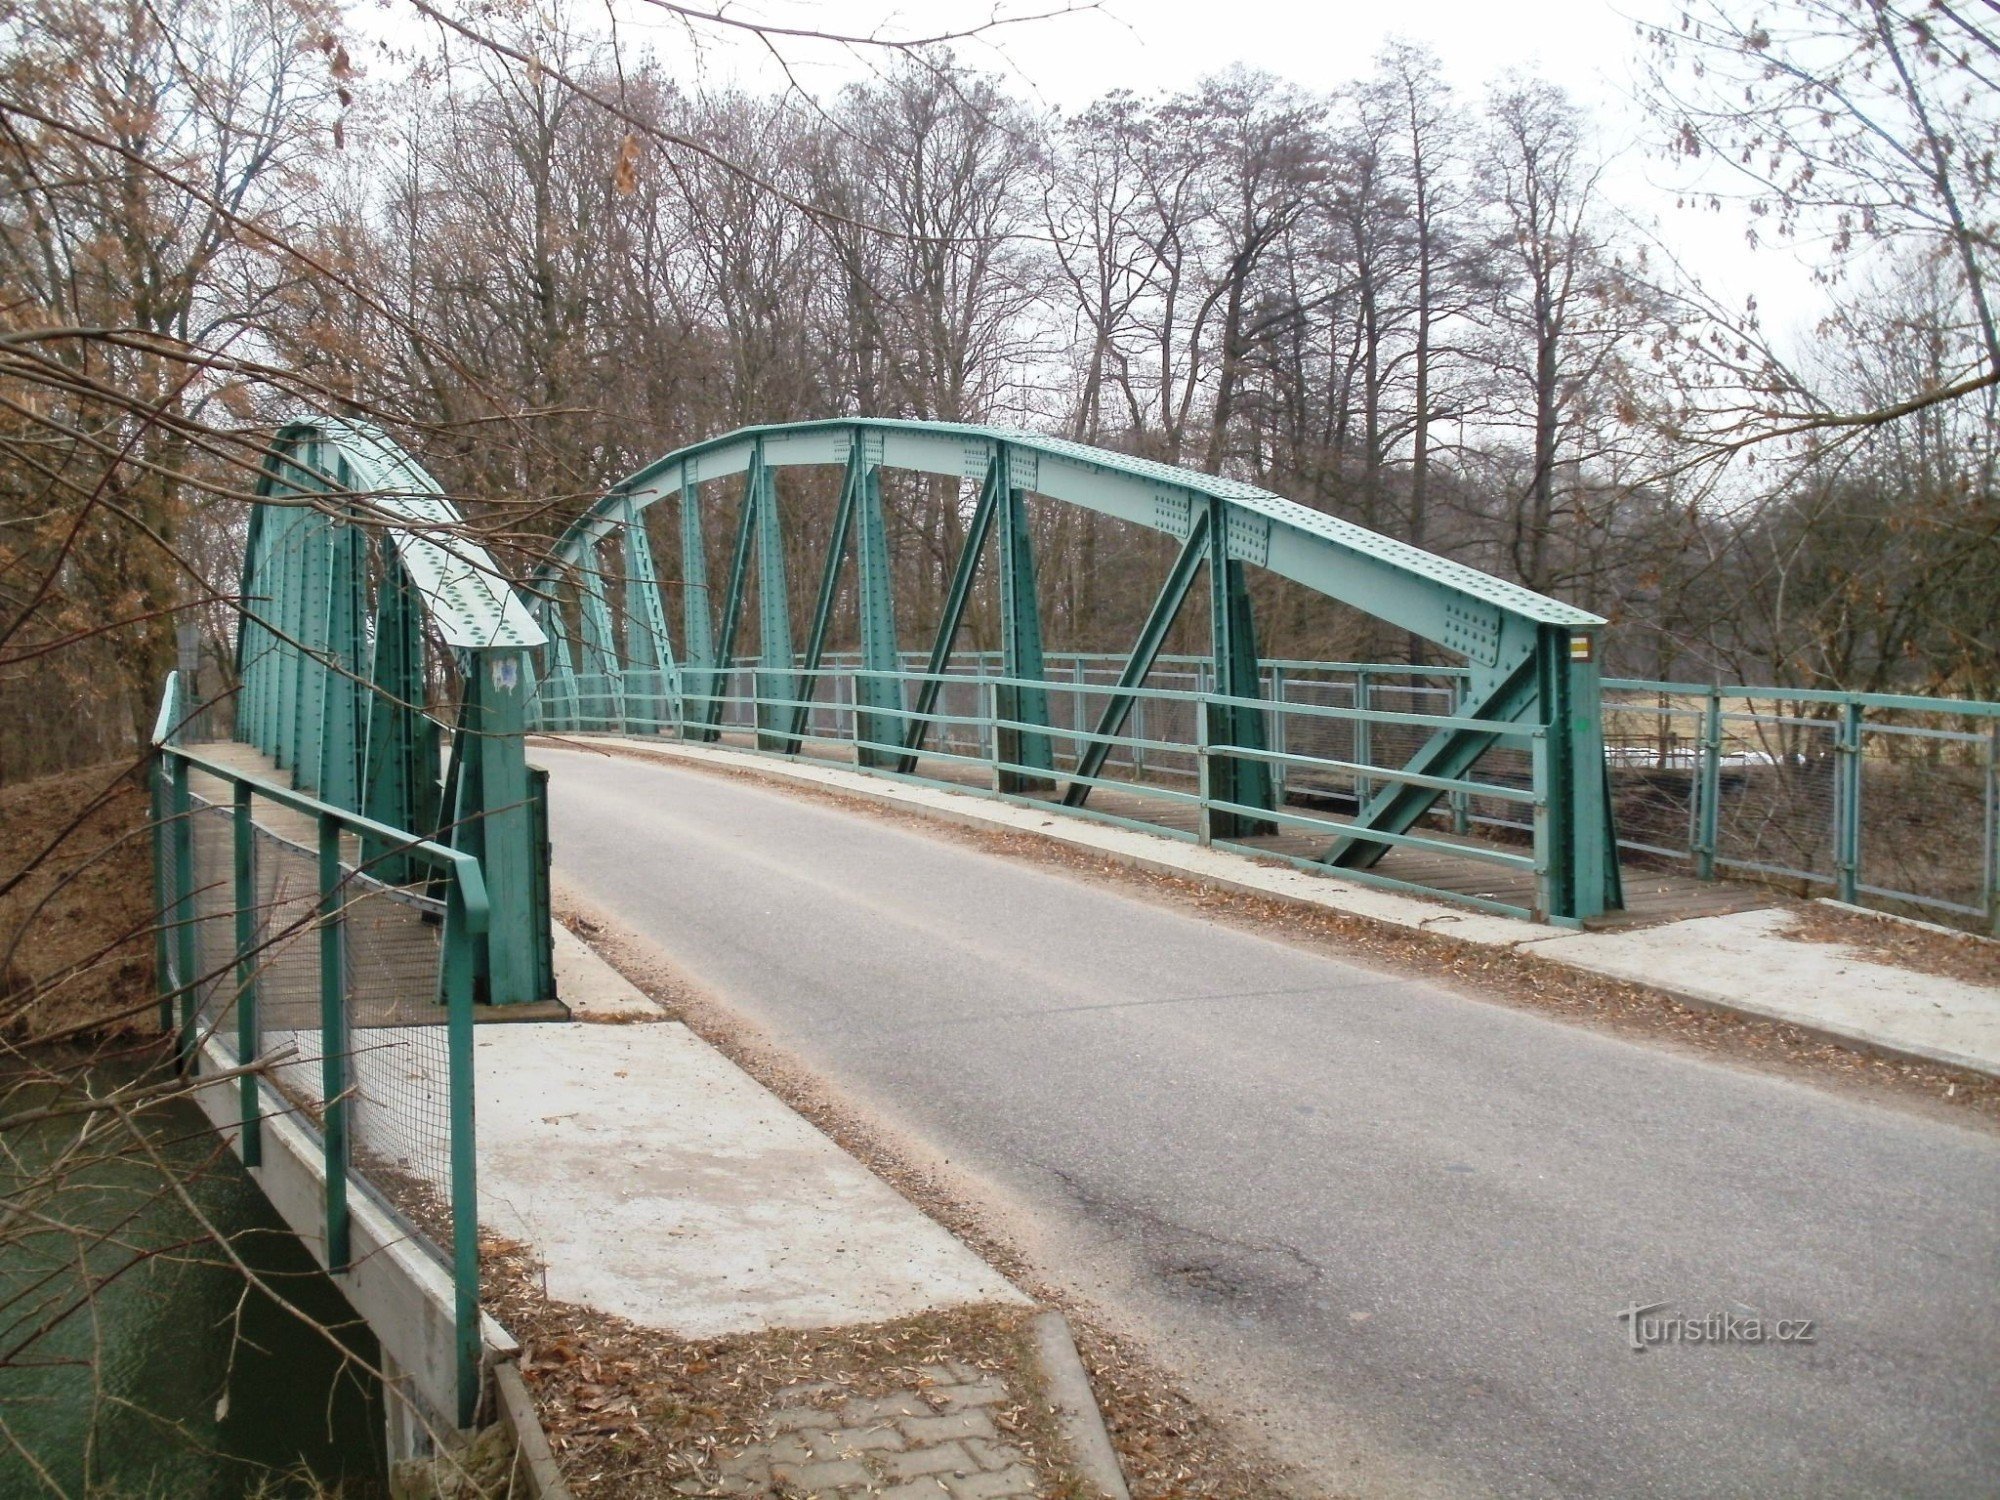 Lochenice - 铁桥